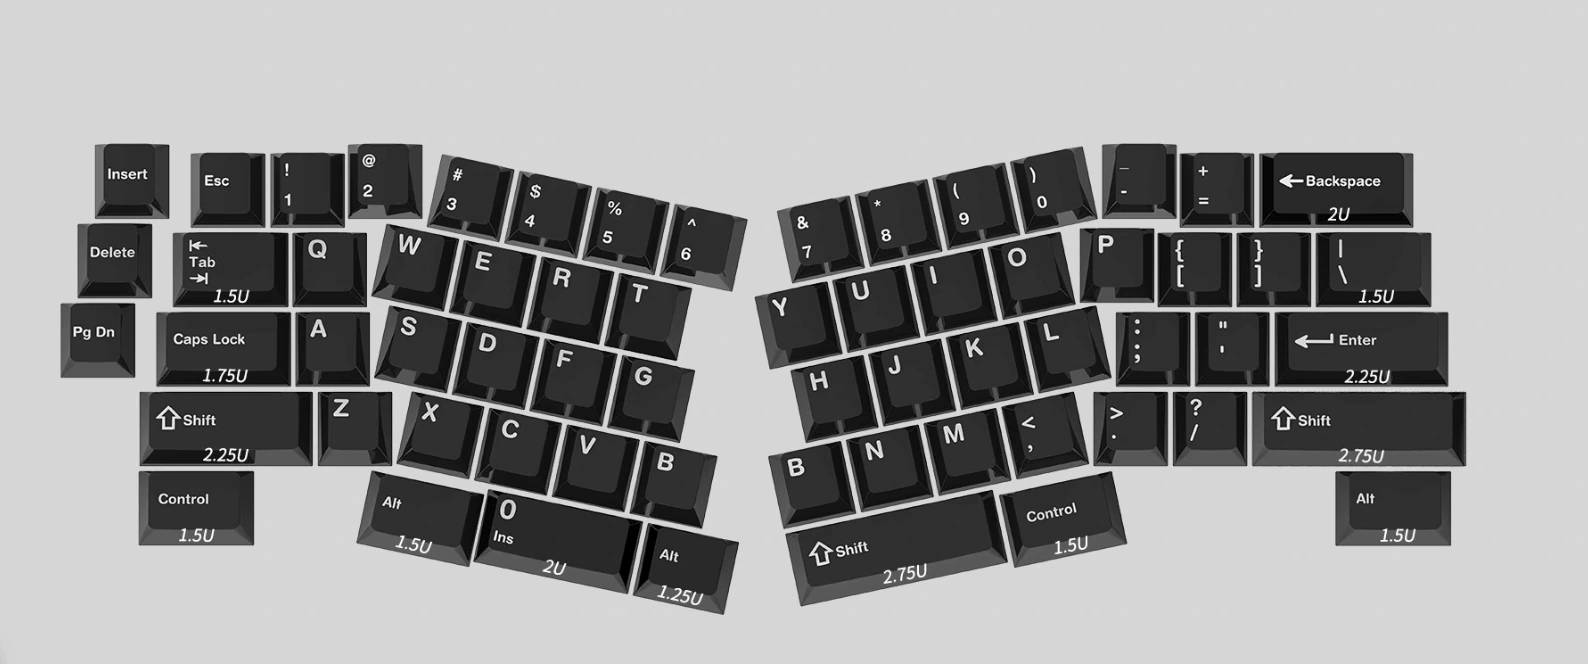 format-alice-keyboard